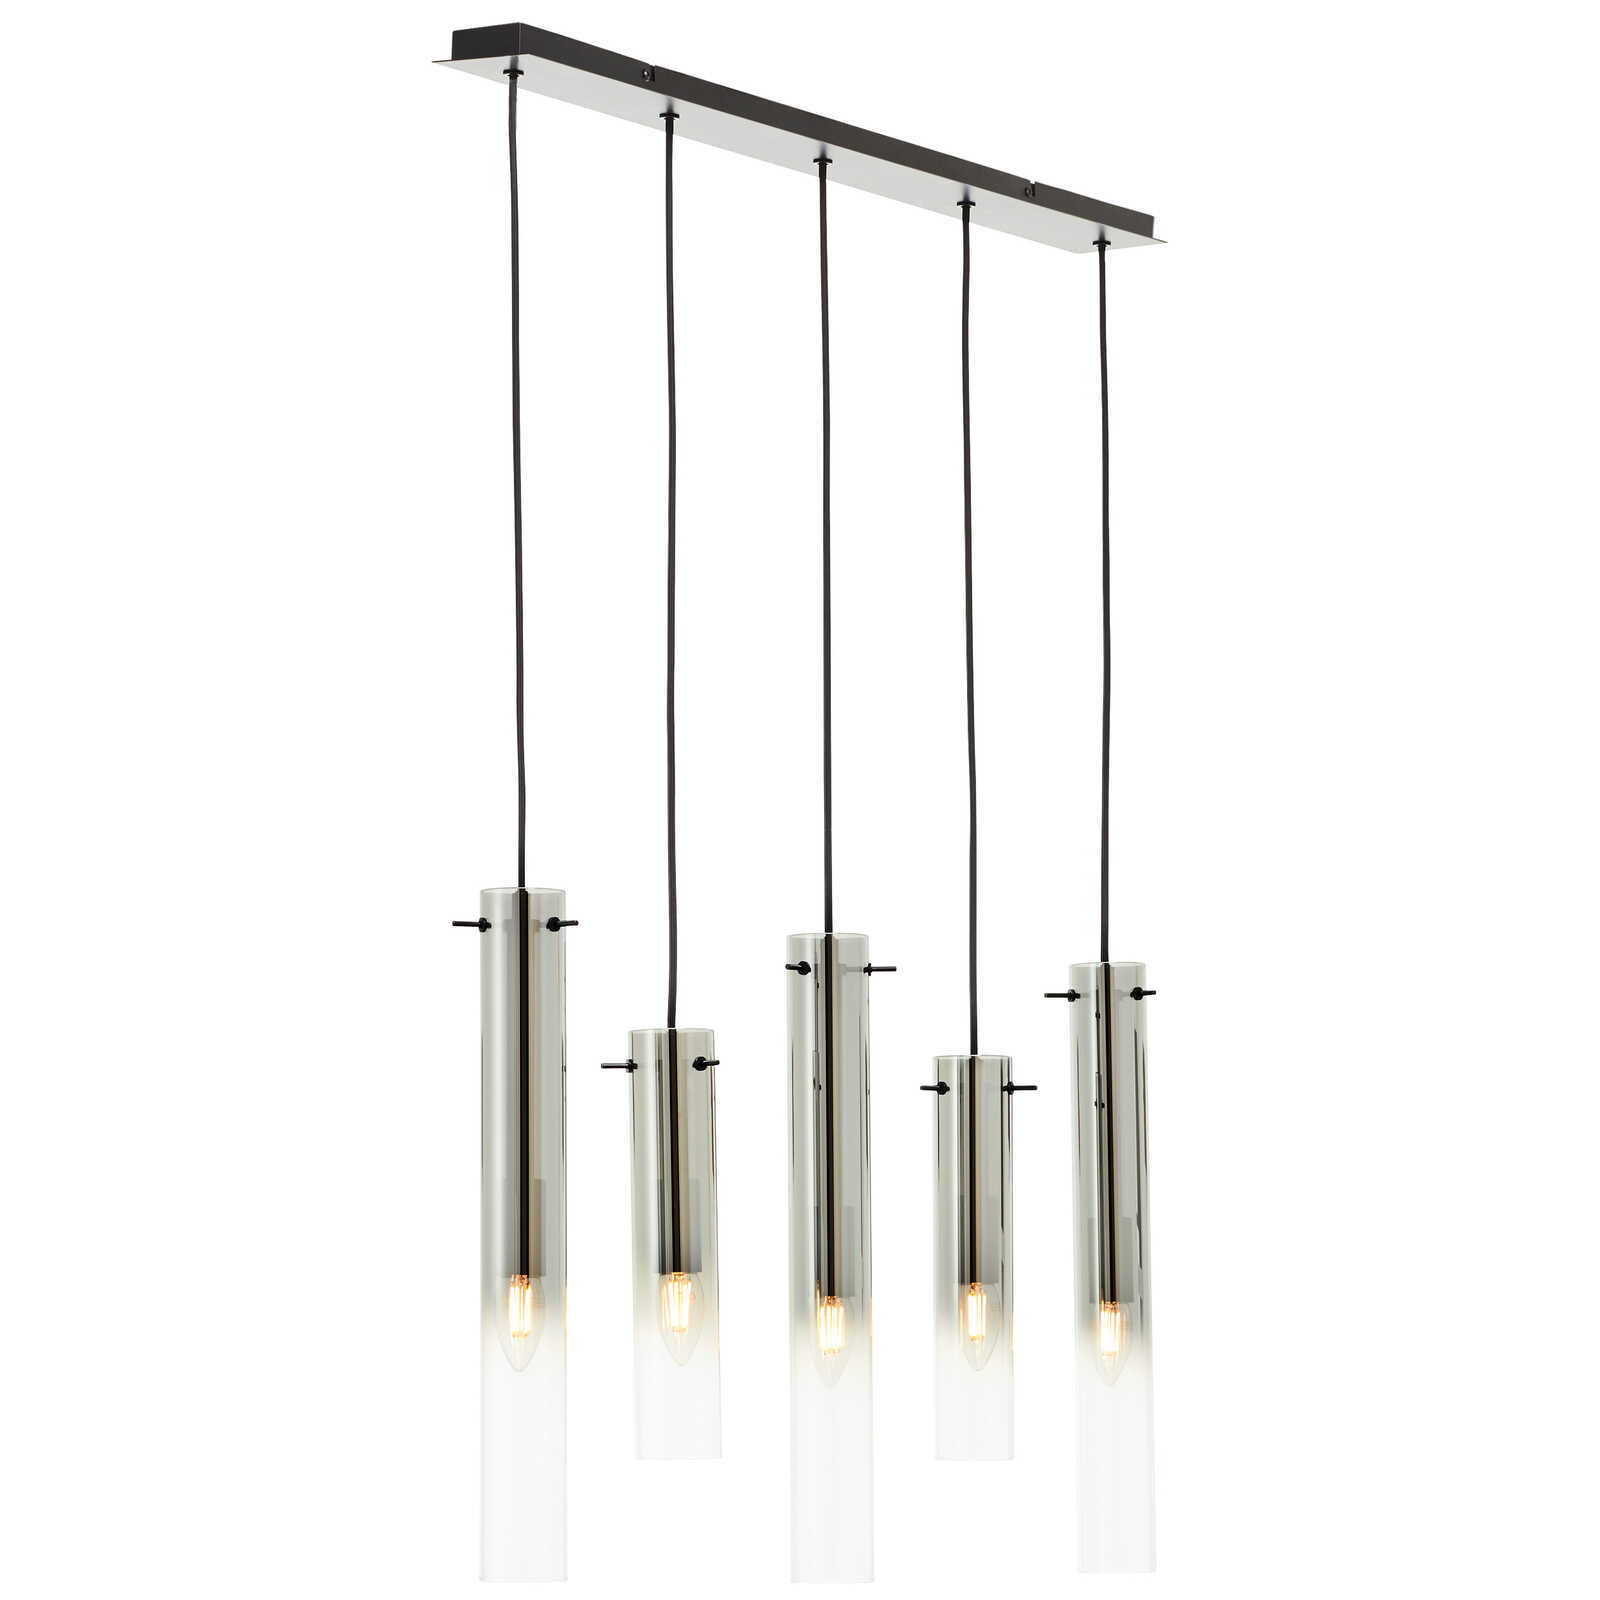             Metalen hanglamp - Hilla 1 - Grijs
        